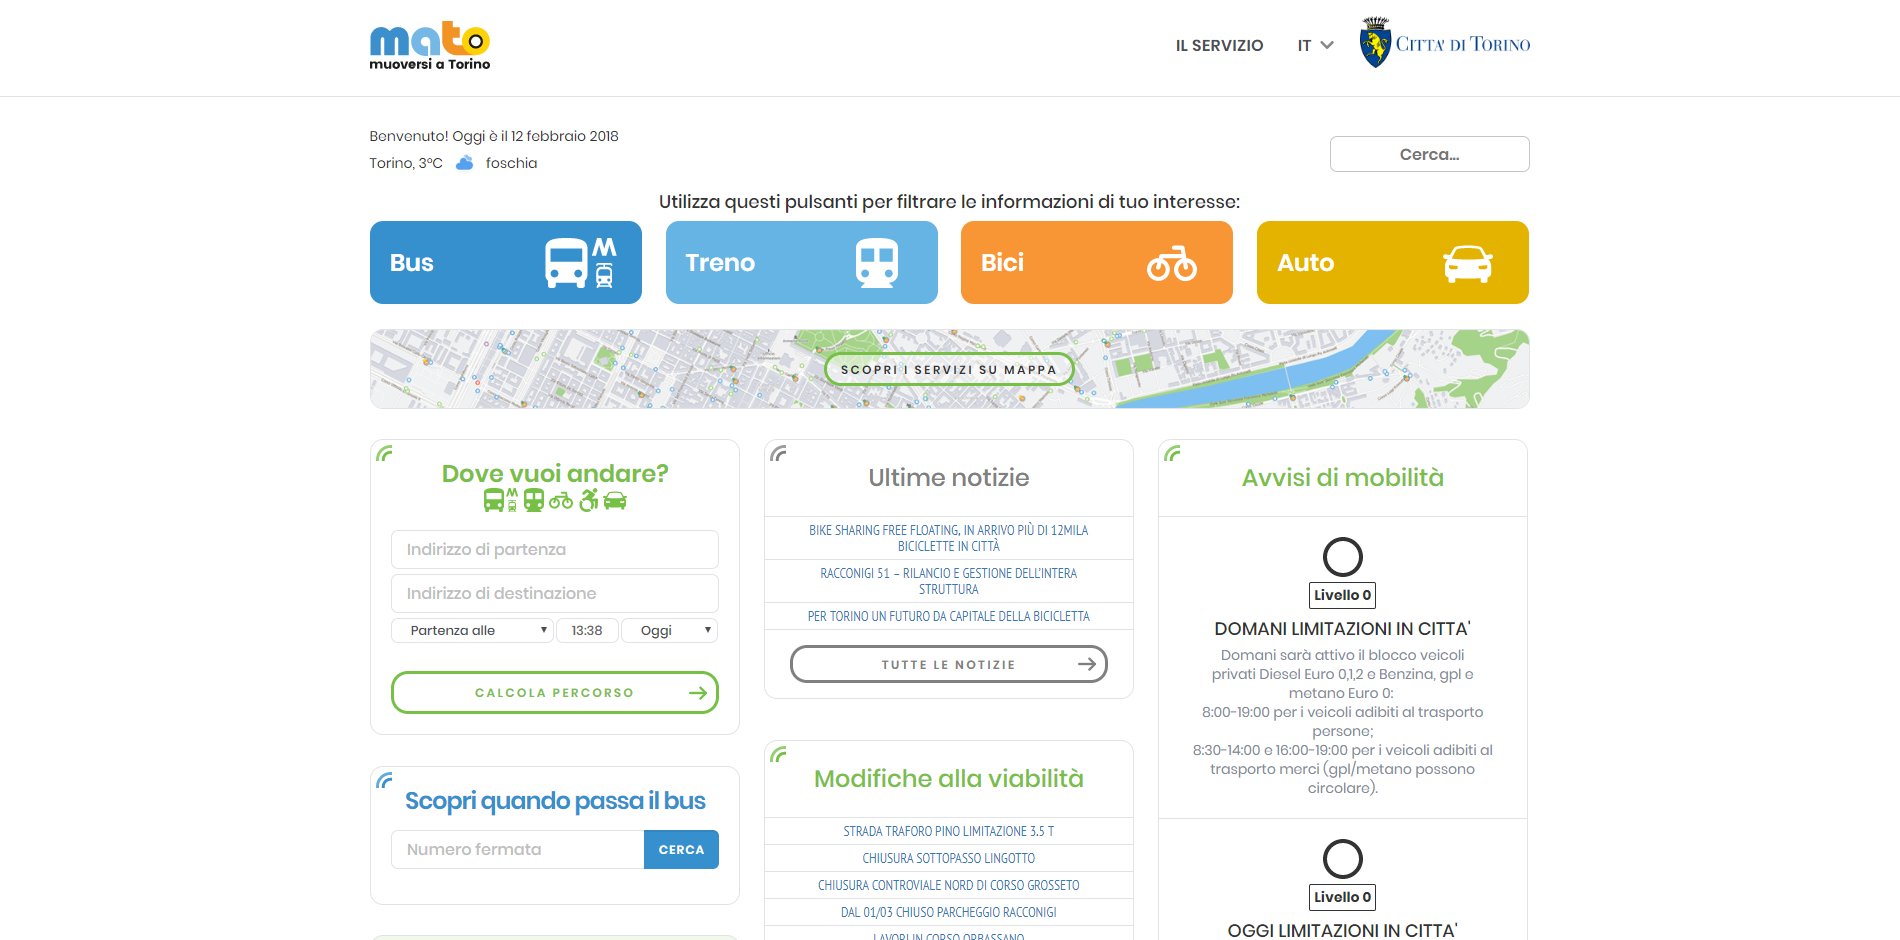 Muoversi a Torino: on-line il nuovo portale web di infomobilità della città